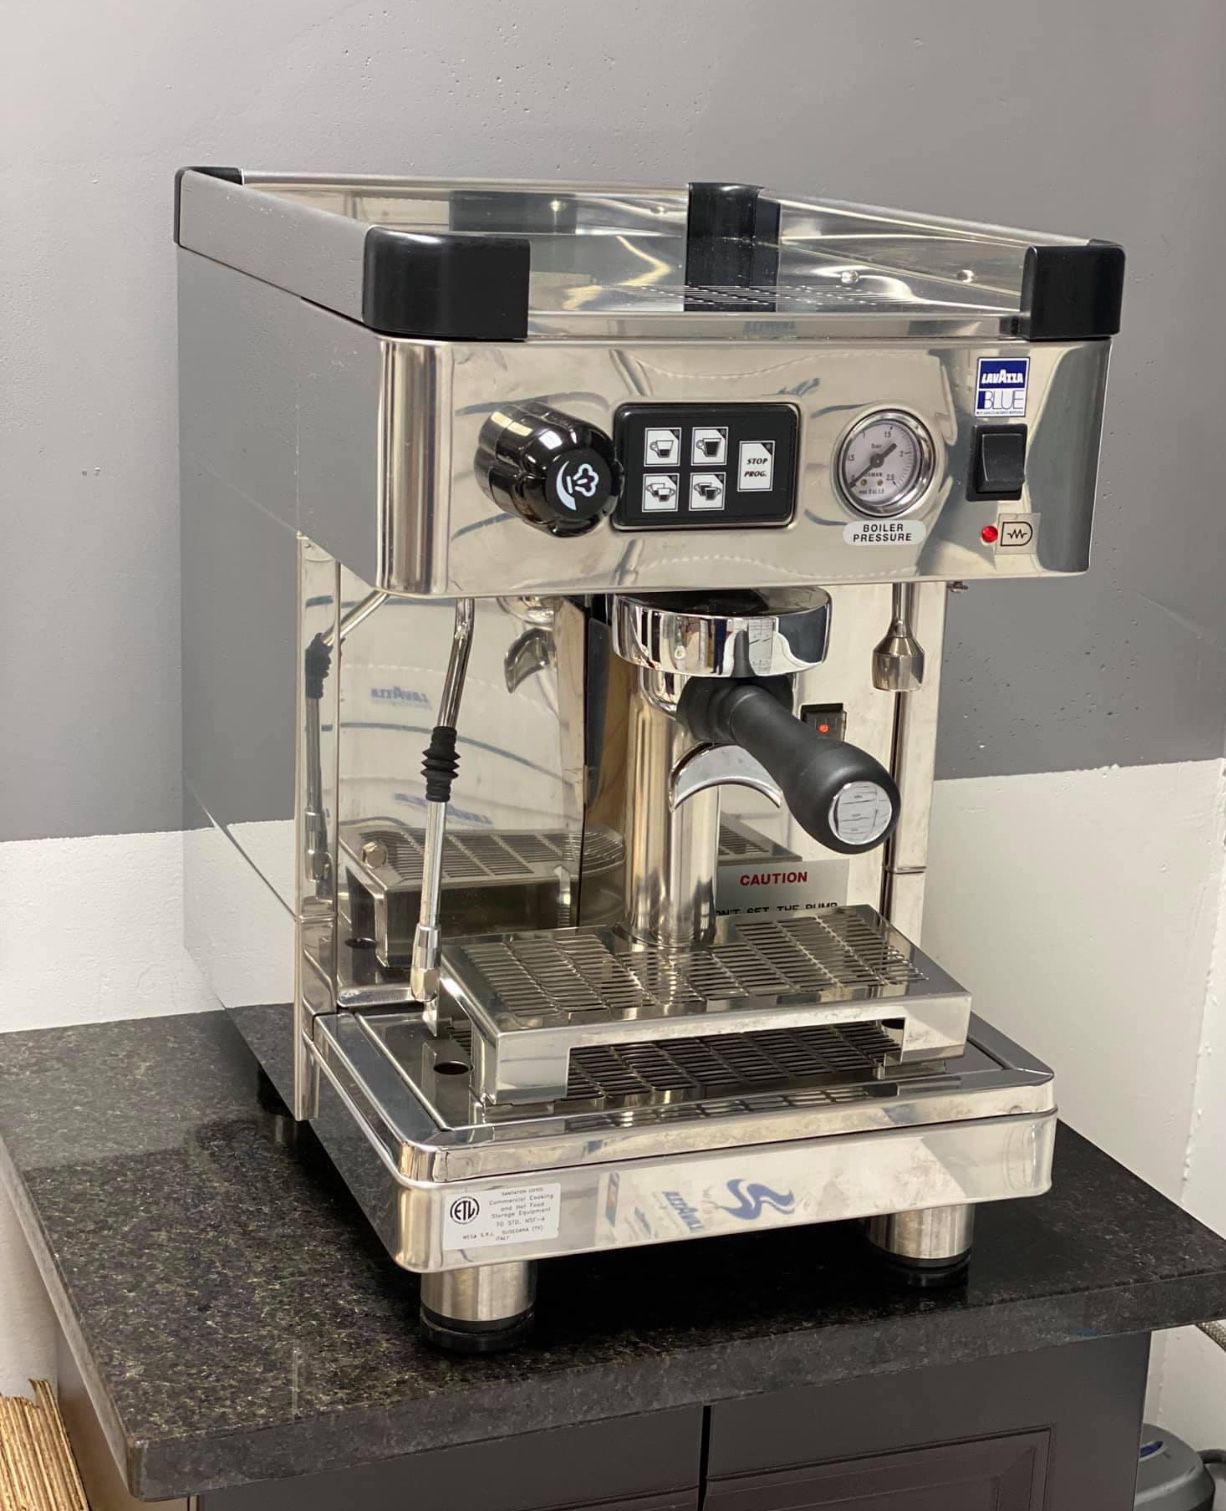 Espresso Machine Lavazza 2811